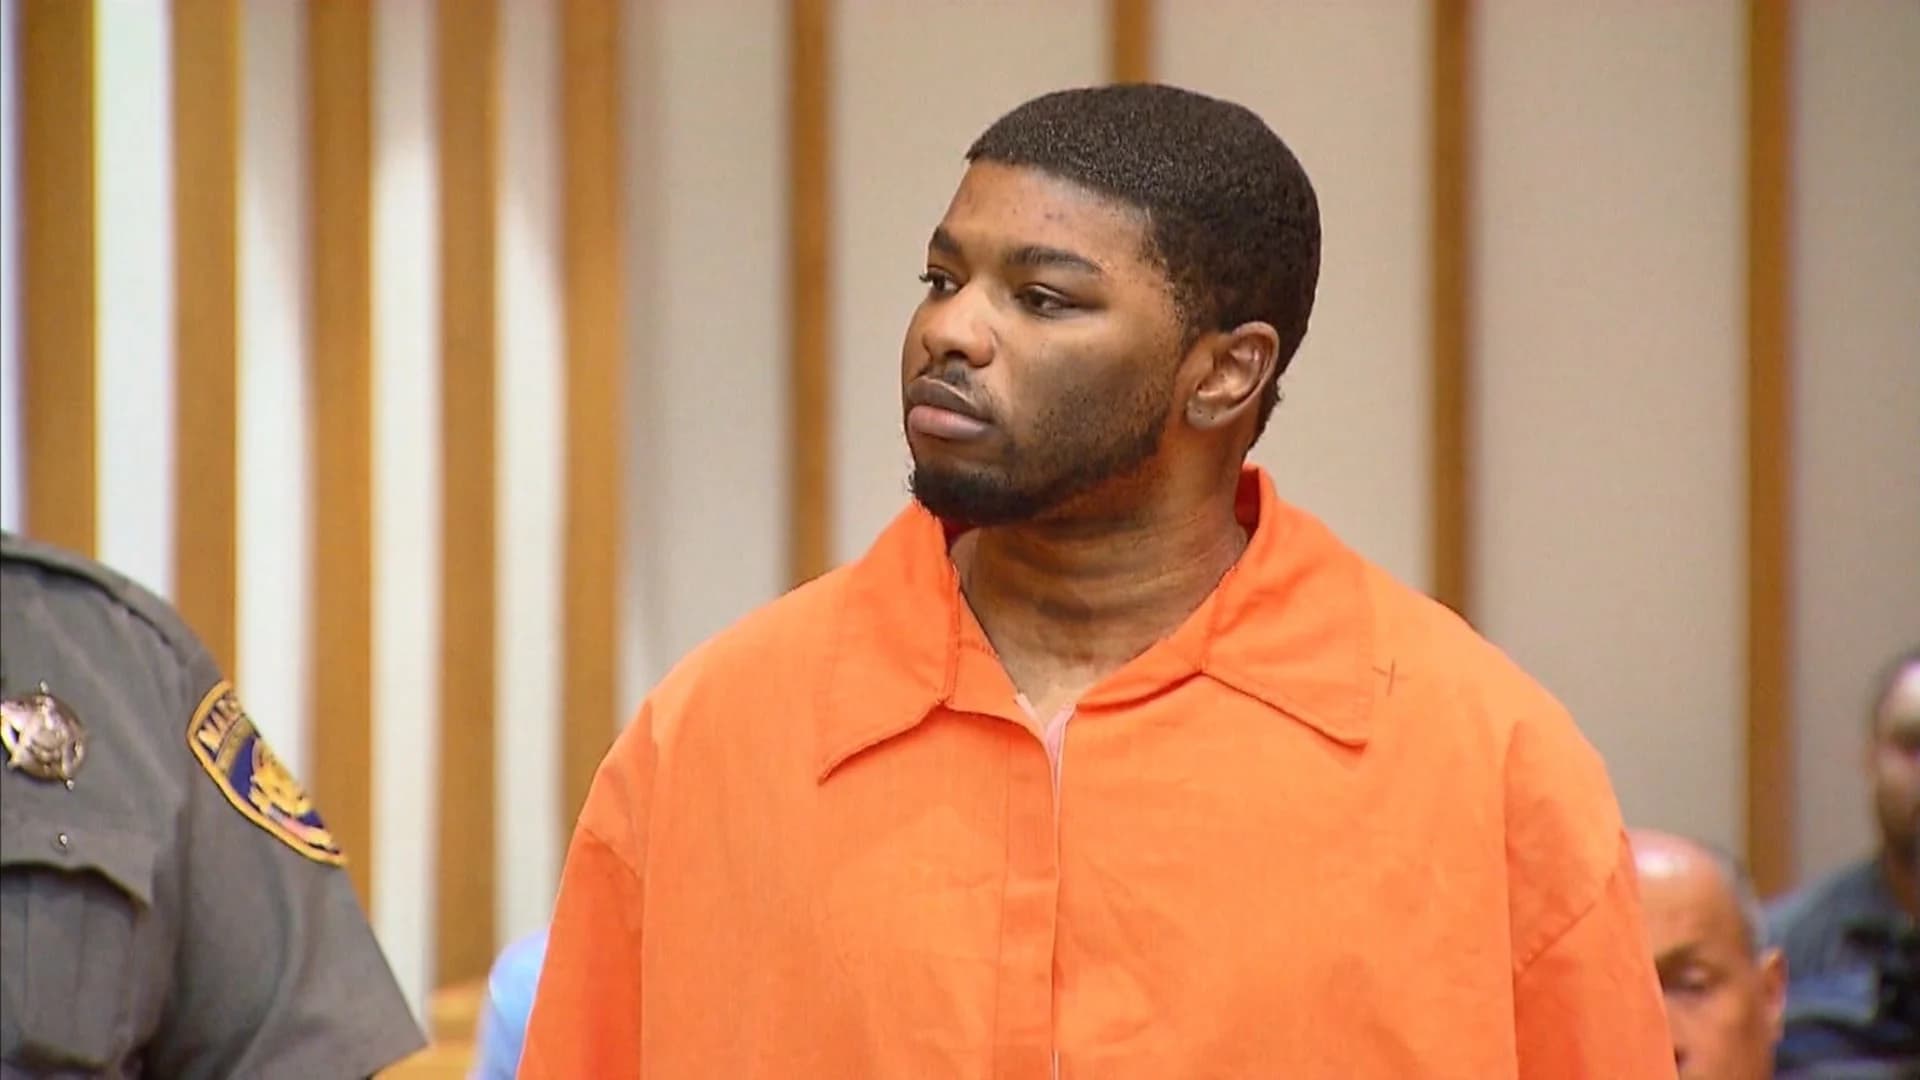 Trial begins this week for man accused of killing girlfriend